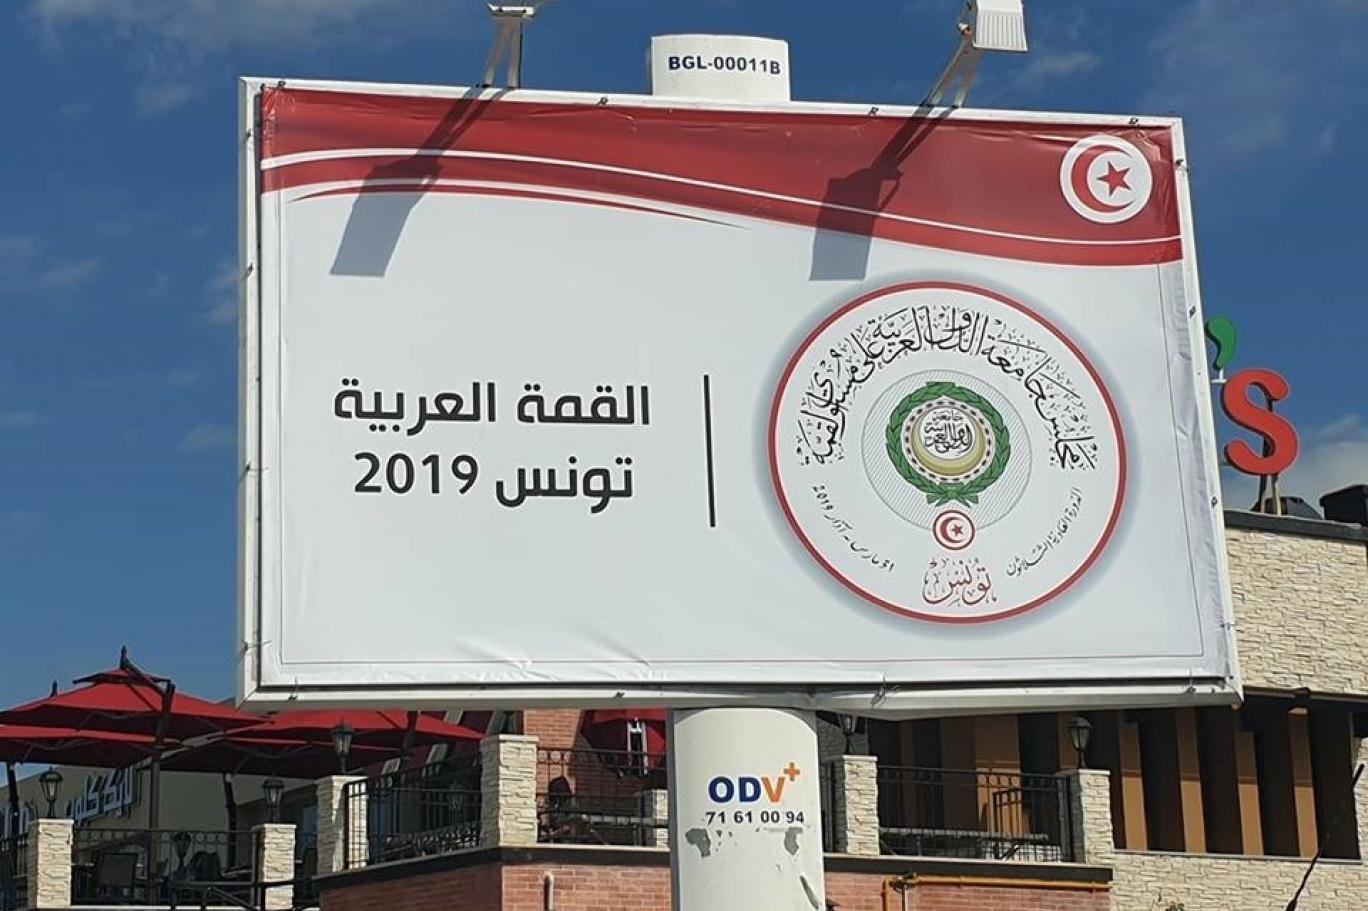 تونس تستعد بفرح لاستقبال القمة العربية اندبندنت عربية